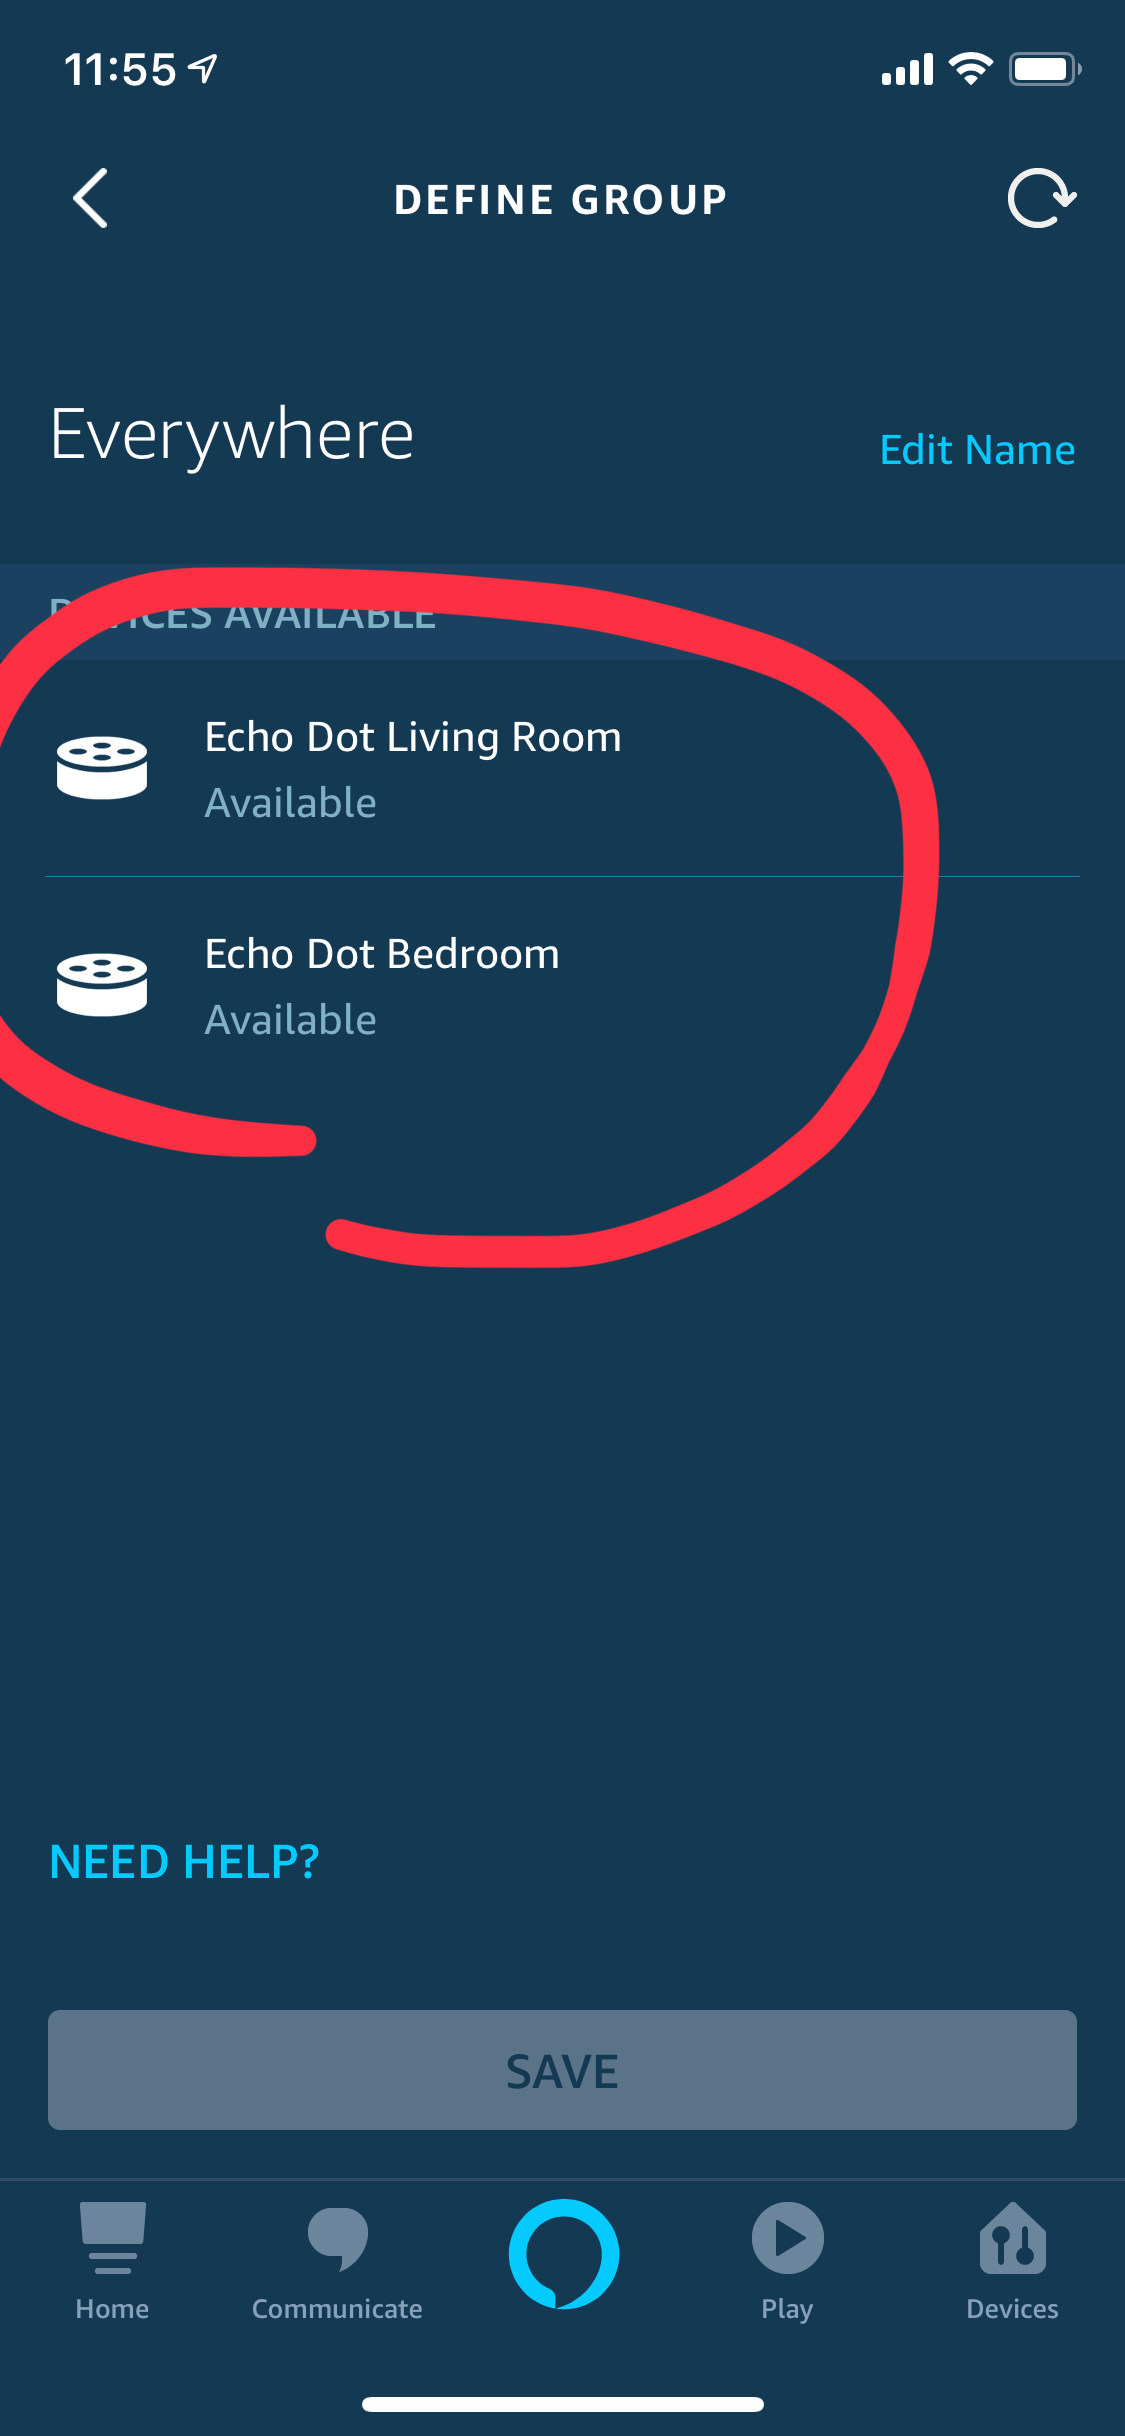 echo and sonos multi room